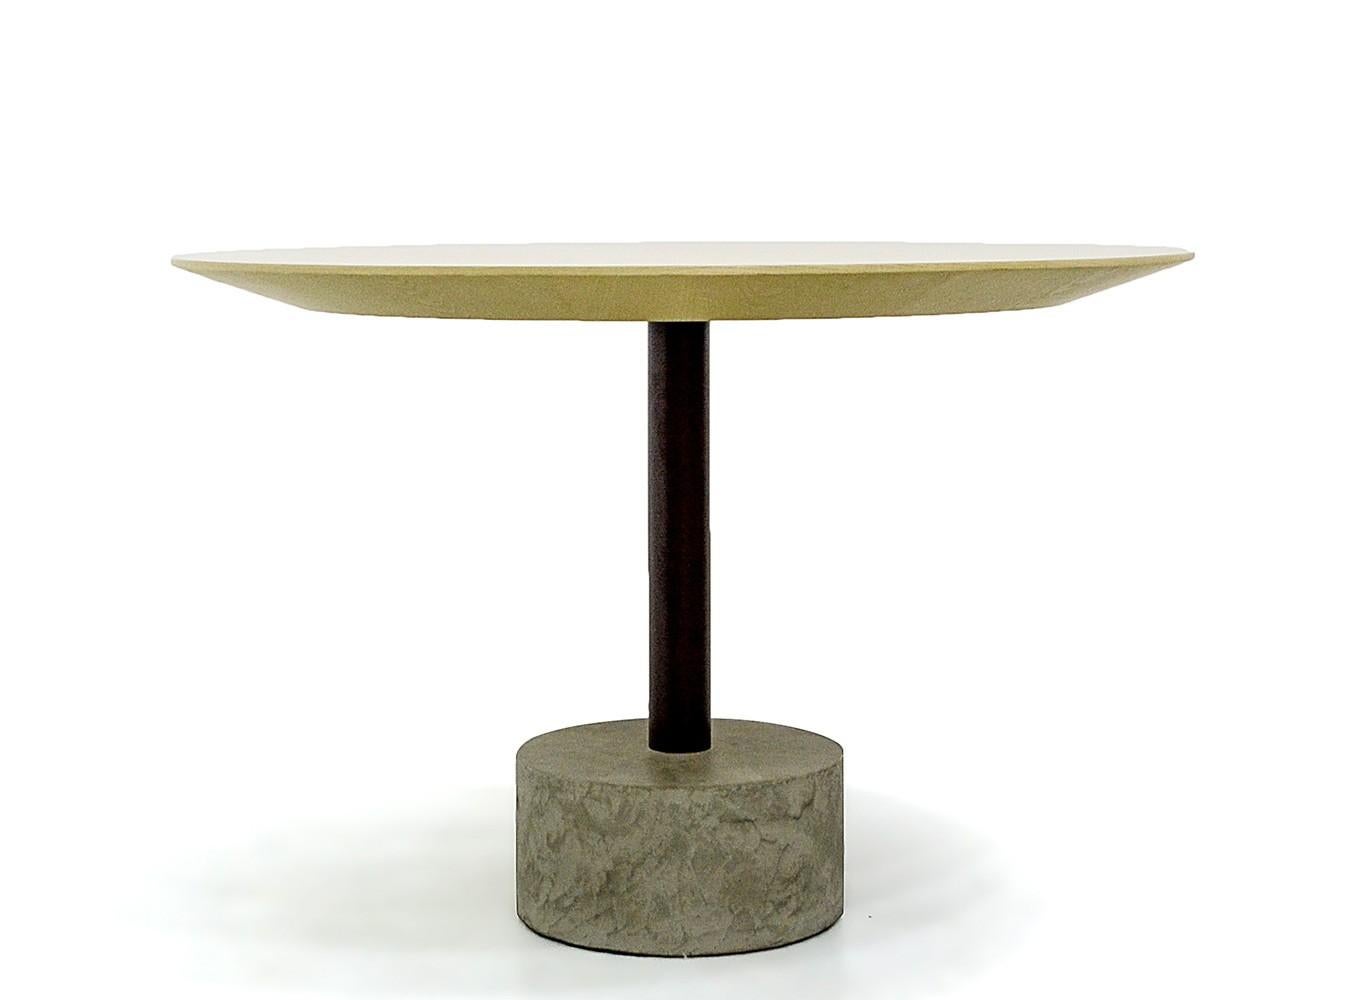 Cette belle table est fabriquée en béton, en acier et en chêne. Il peut servir à de multiples usages et s'adapter à différents types d'intérieurs, car il est disponible en plusieurs dimensions possibles. L'auteur, Arthur Casas, est l'un des plus